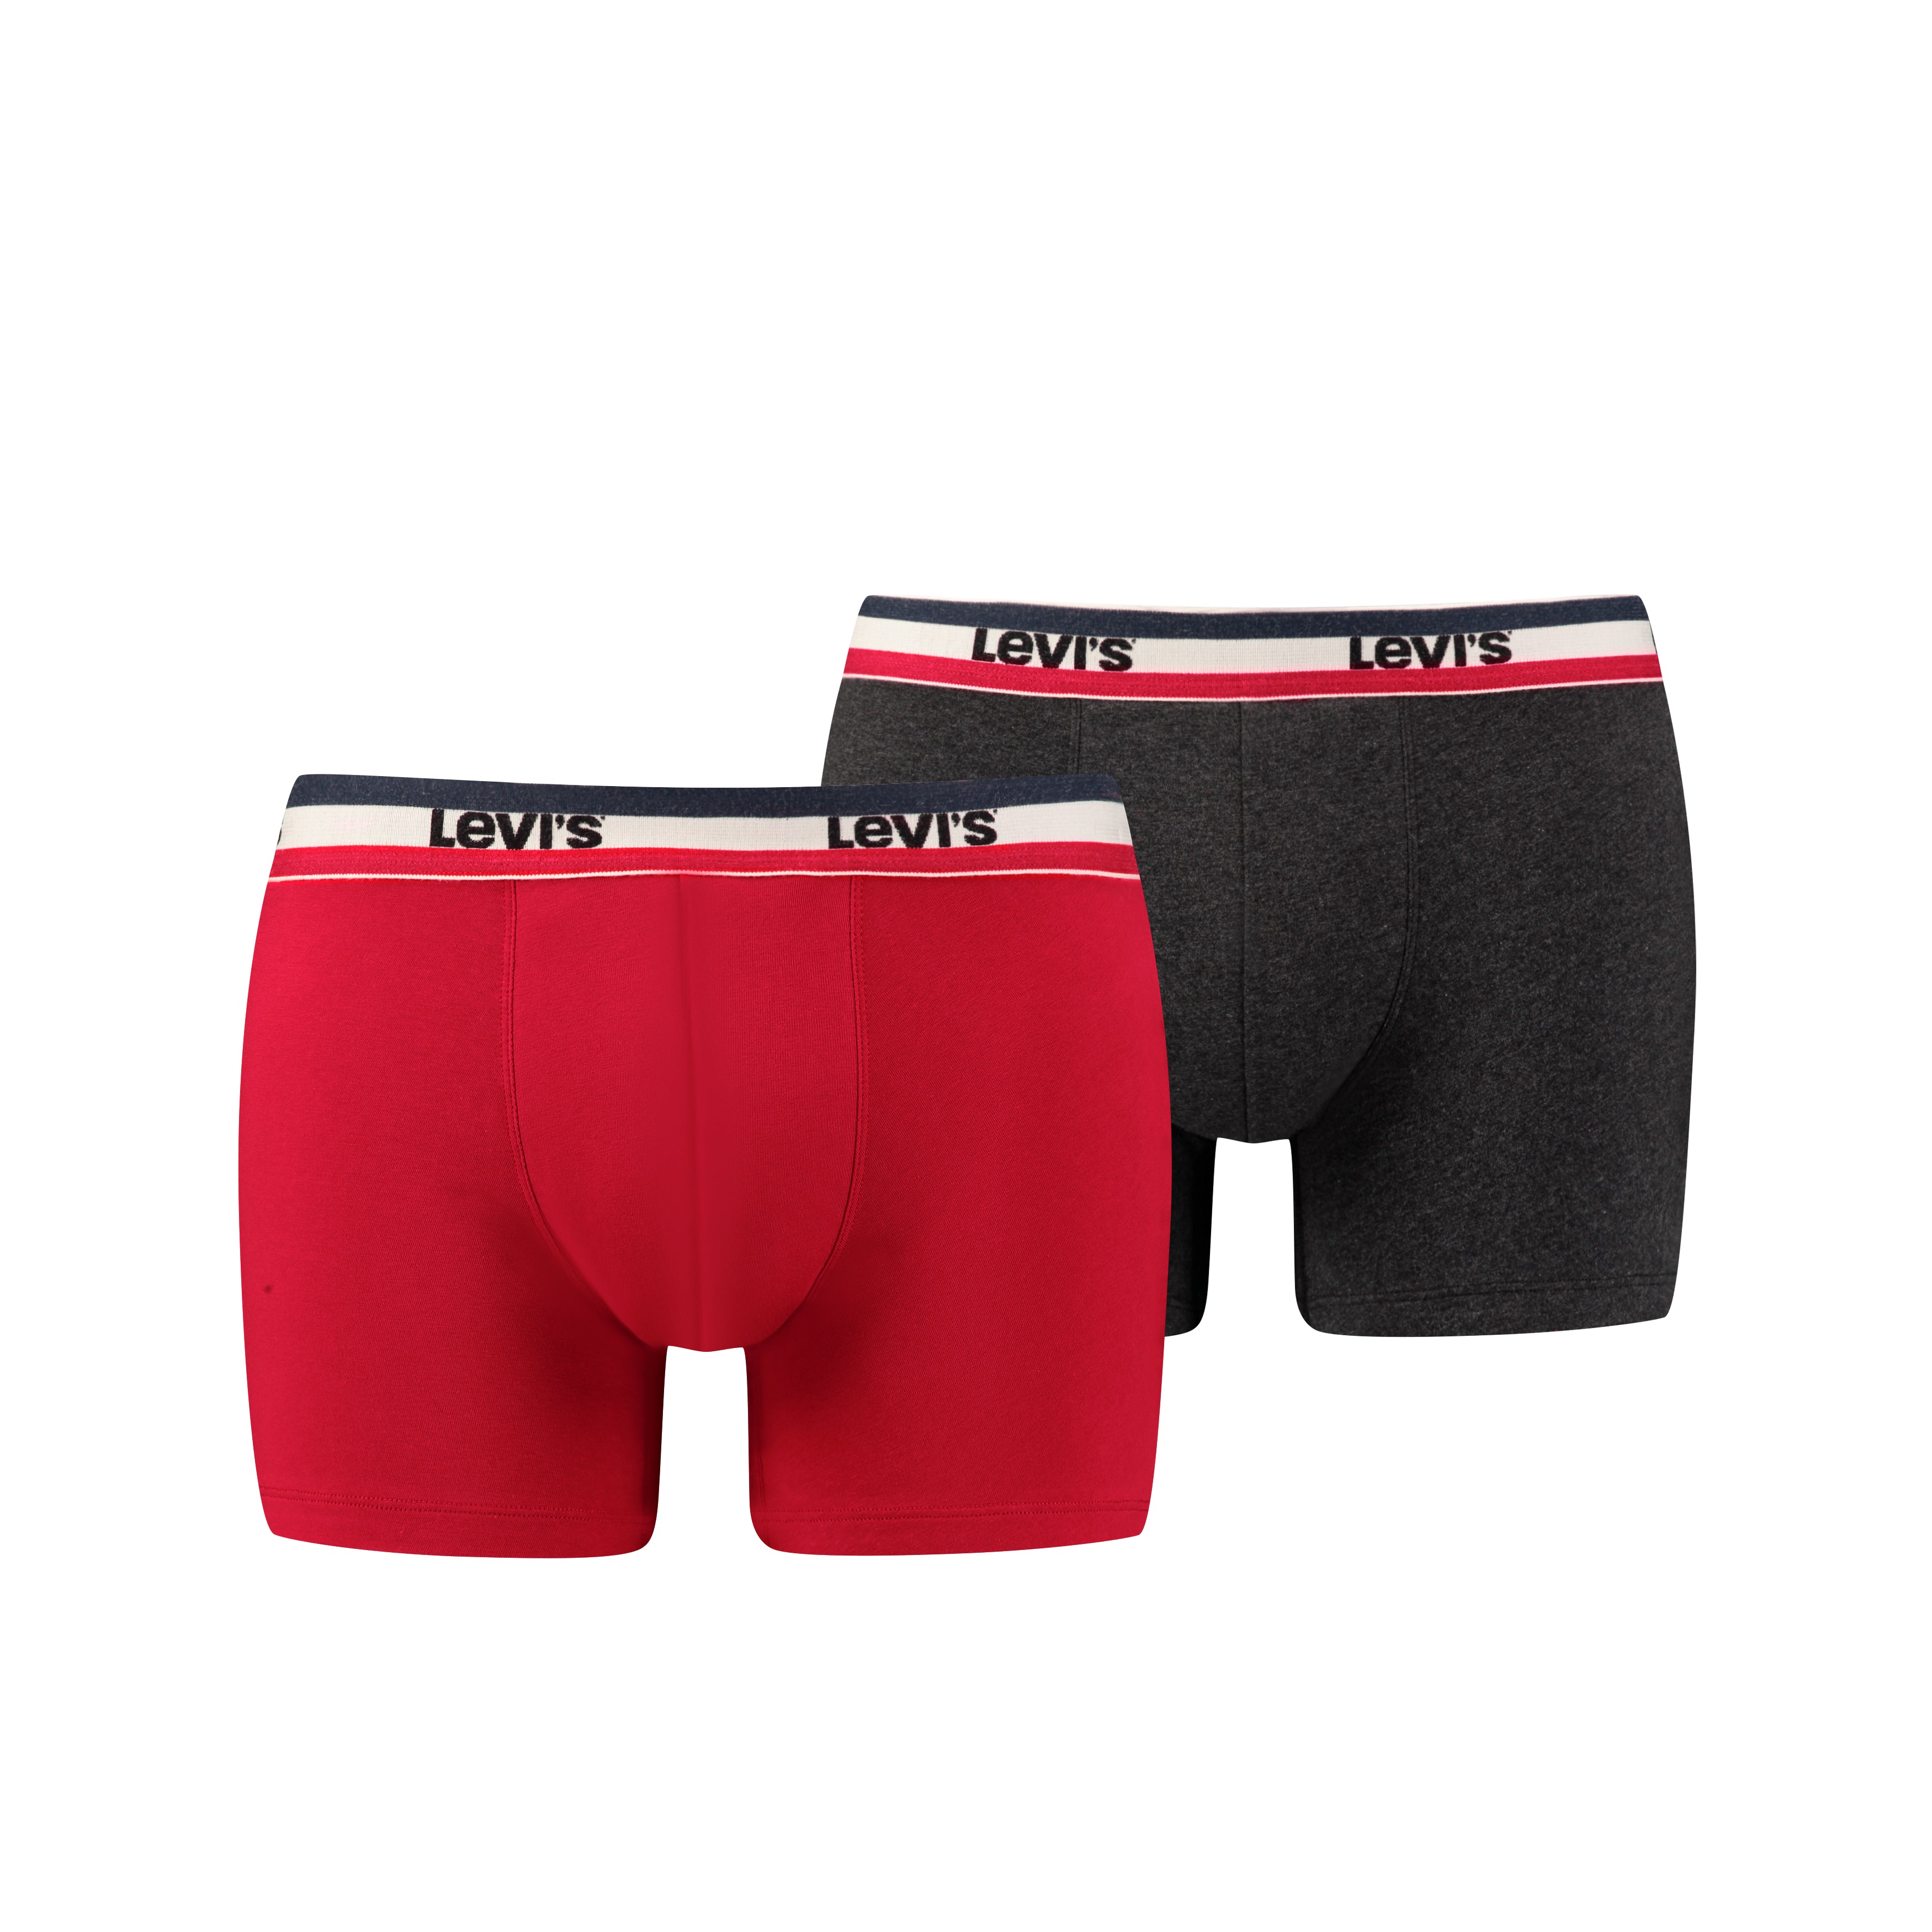 Levis Men's Underwear | Levis Boxers, Briefs & T-shirts | McKenna Man